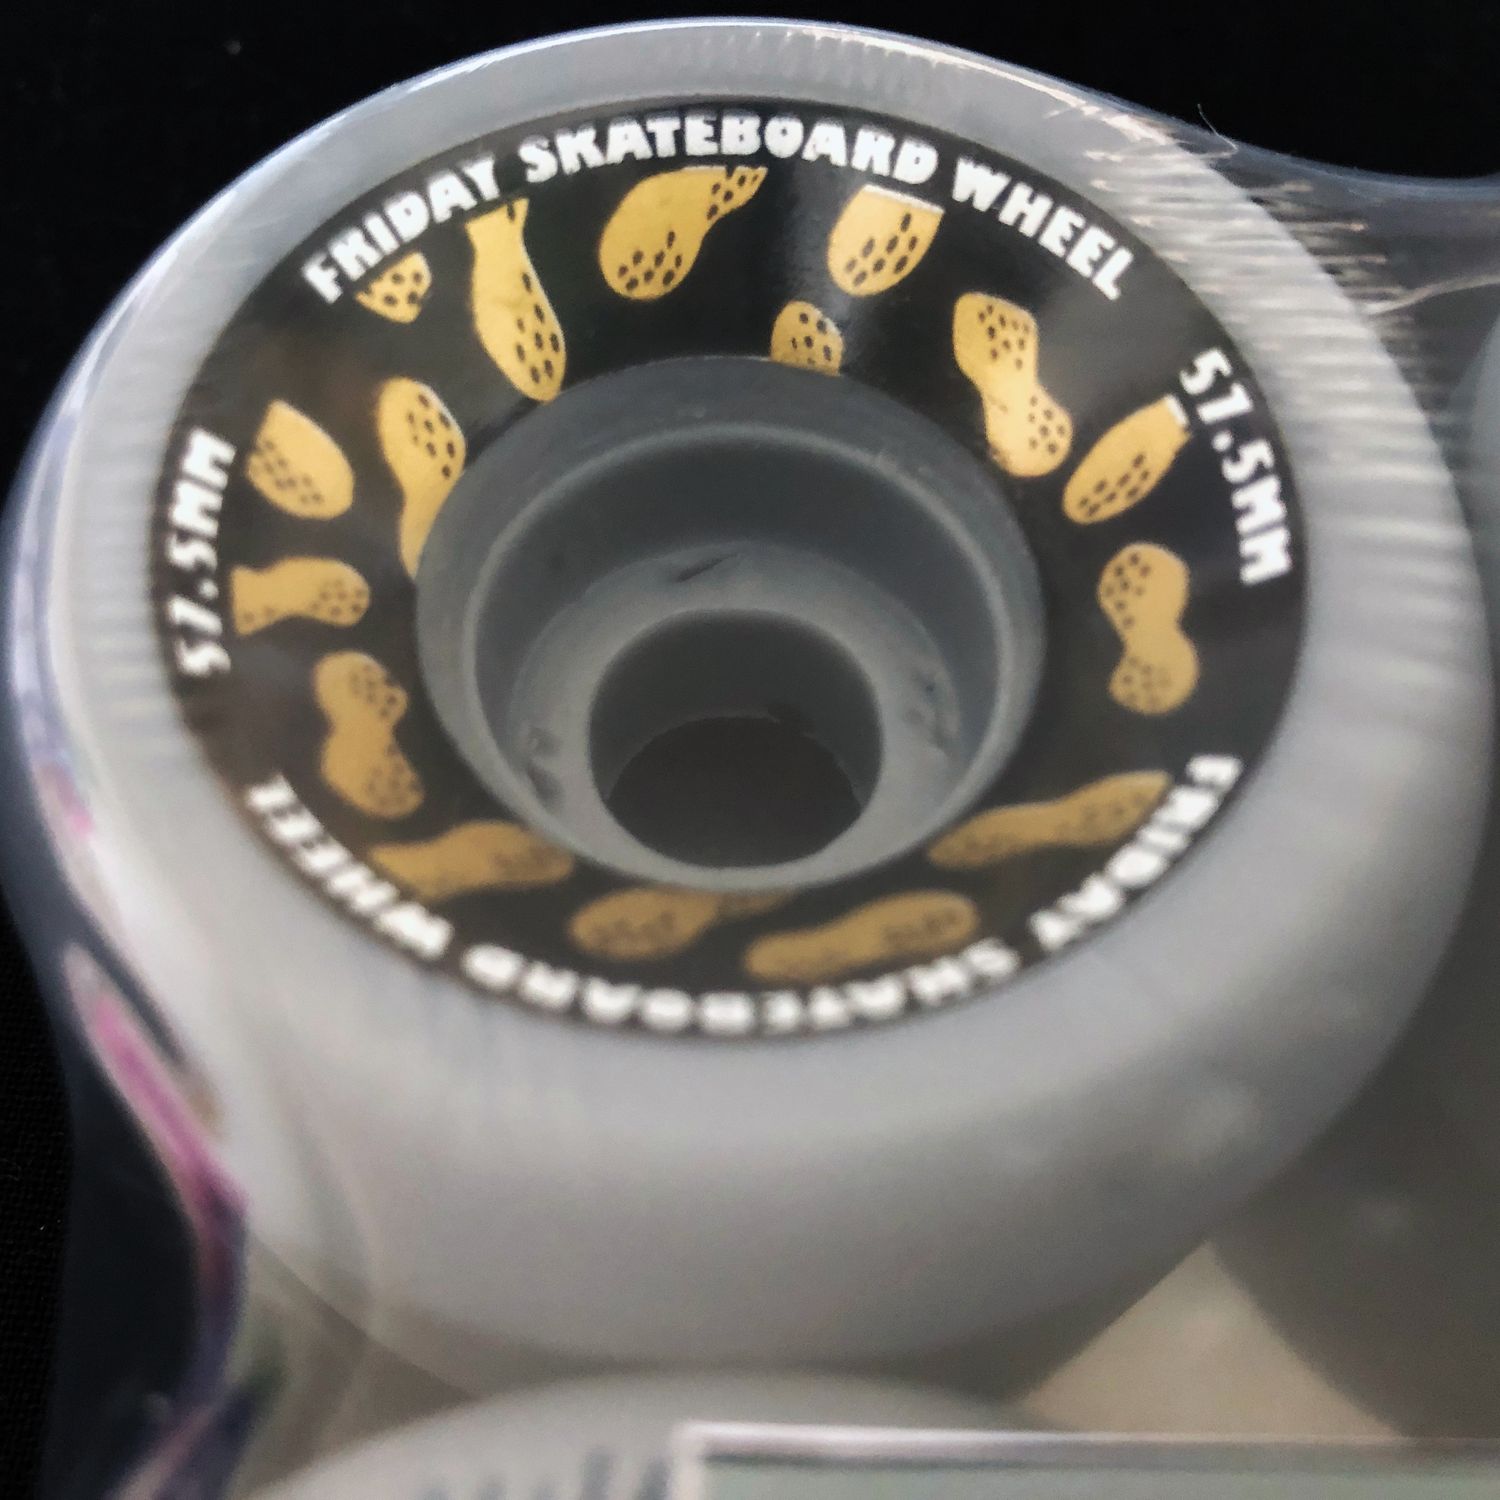 画像: FRIDAY SKATEBOARD WHEEL -GOLDEN NUTS- size:[57.5mm] 101a